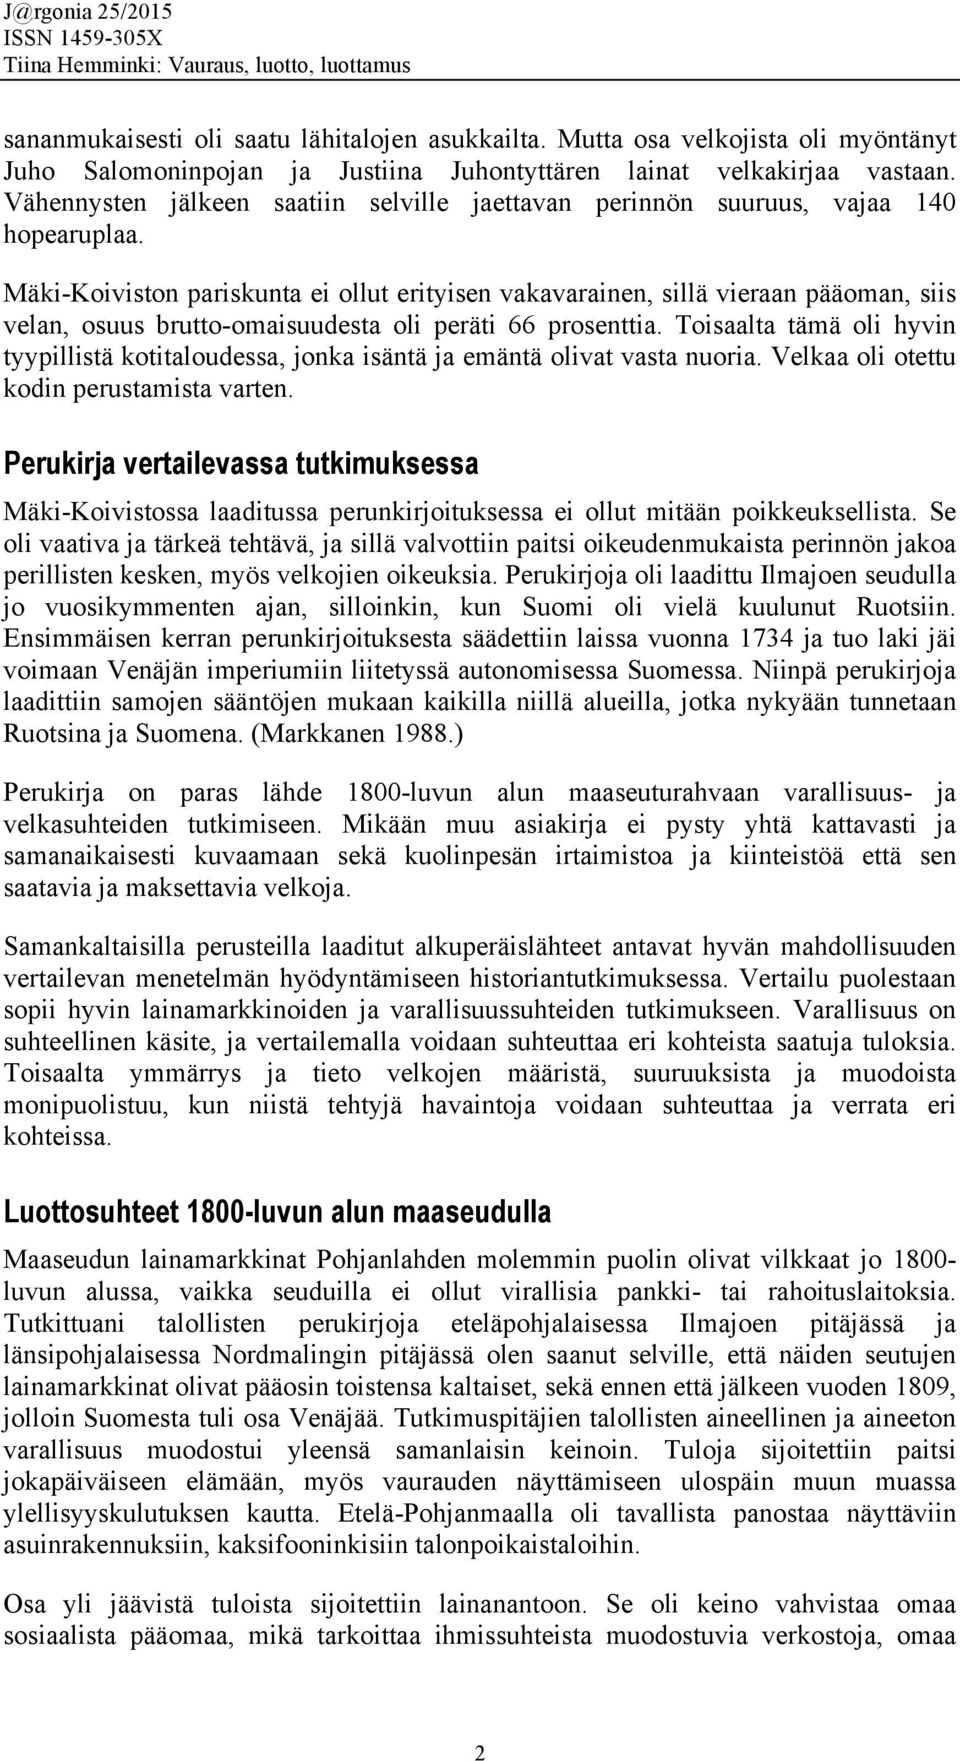 Mäki-Koiviston pariskunta ei ollut erityisen vakavarainen, sillä vieraan pääoman, siis velan, osuus brutto-omaisuudesta oli peräti 66 prosenttia.